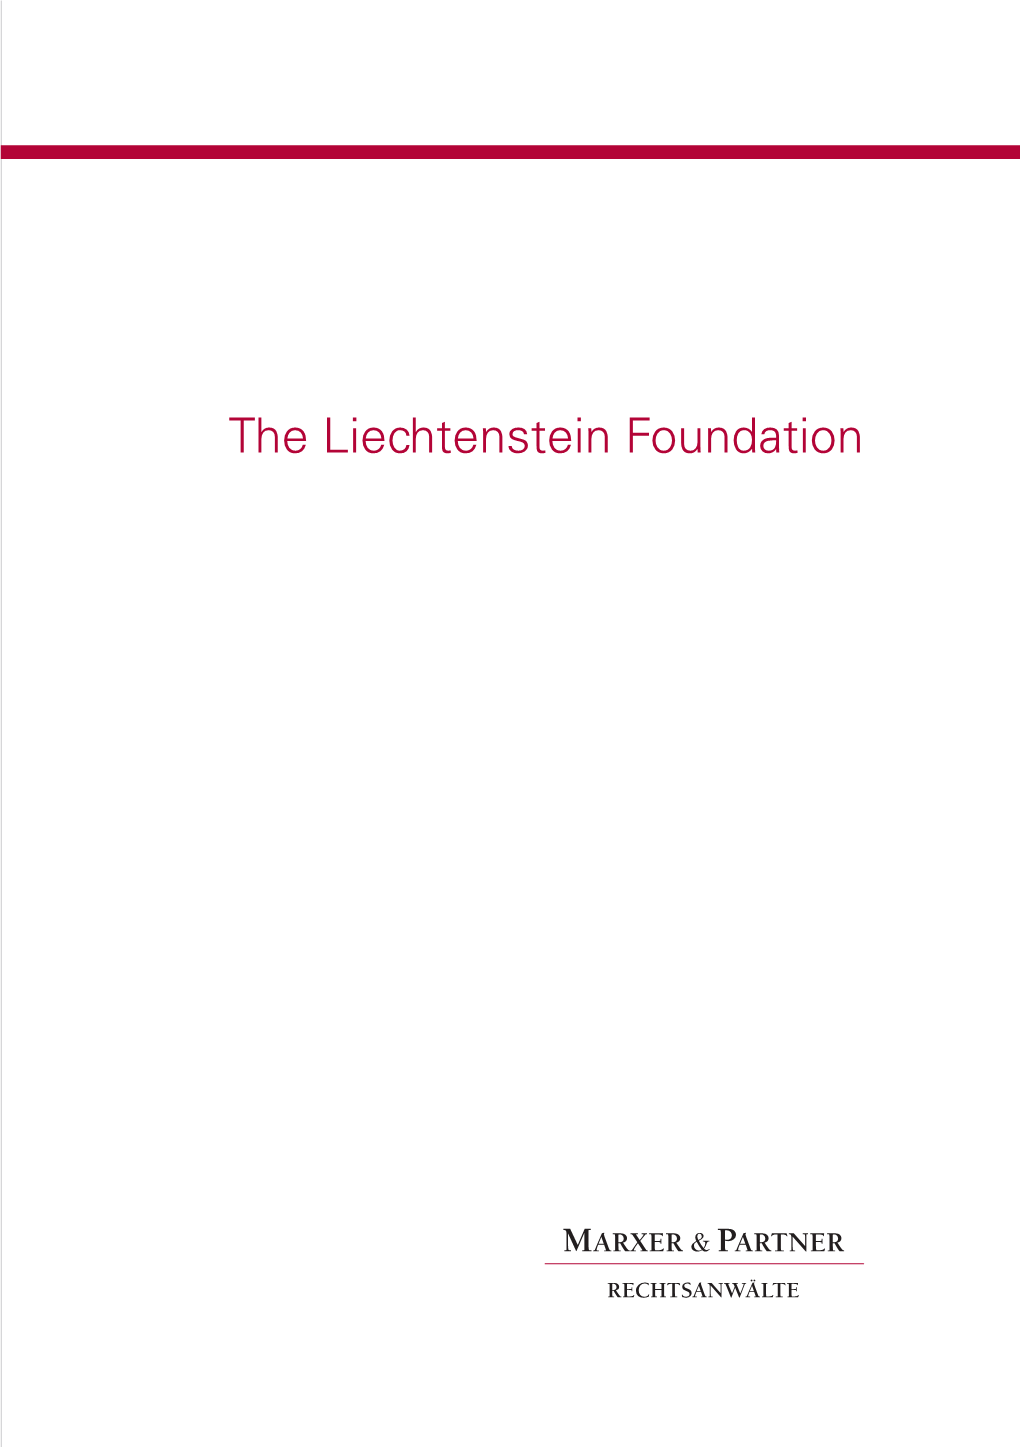 The Liechtenstein Foundation